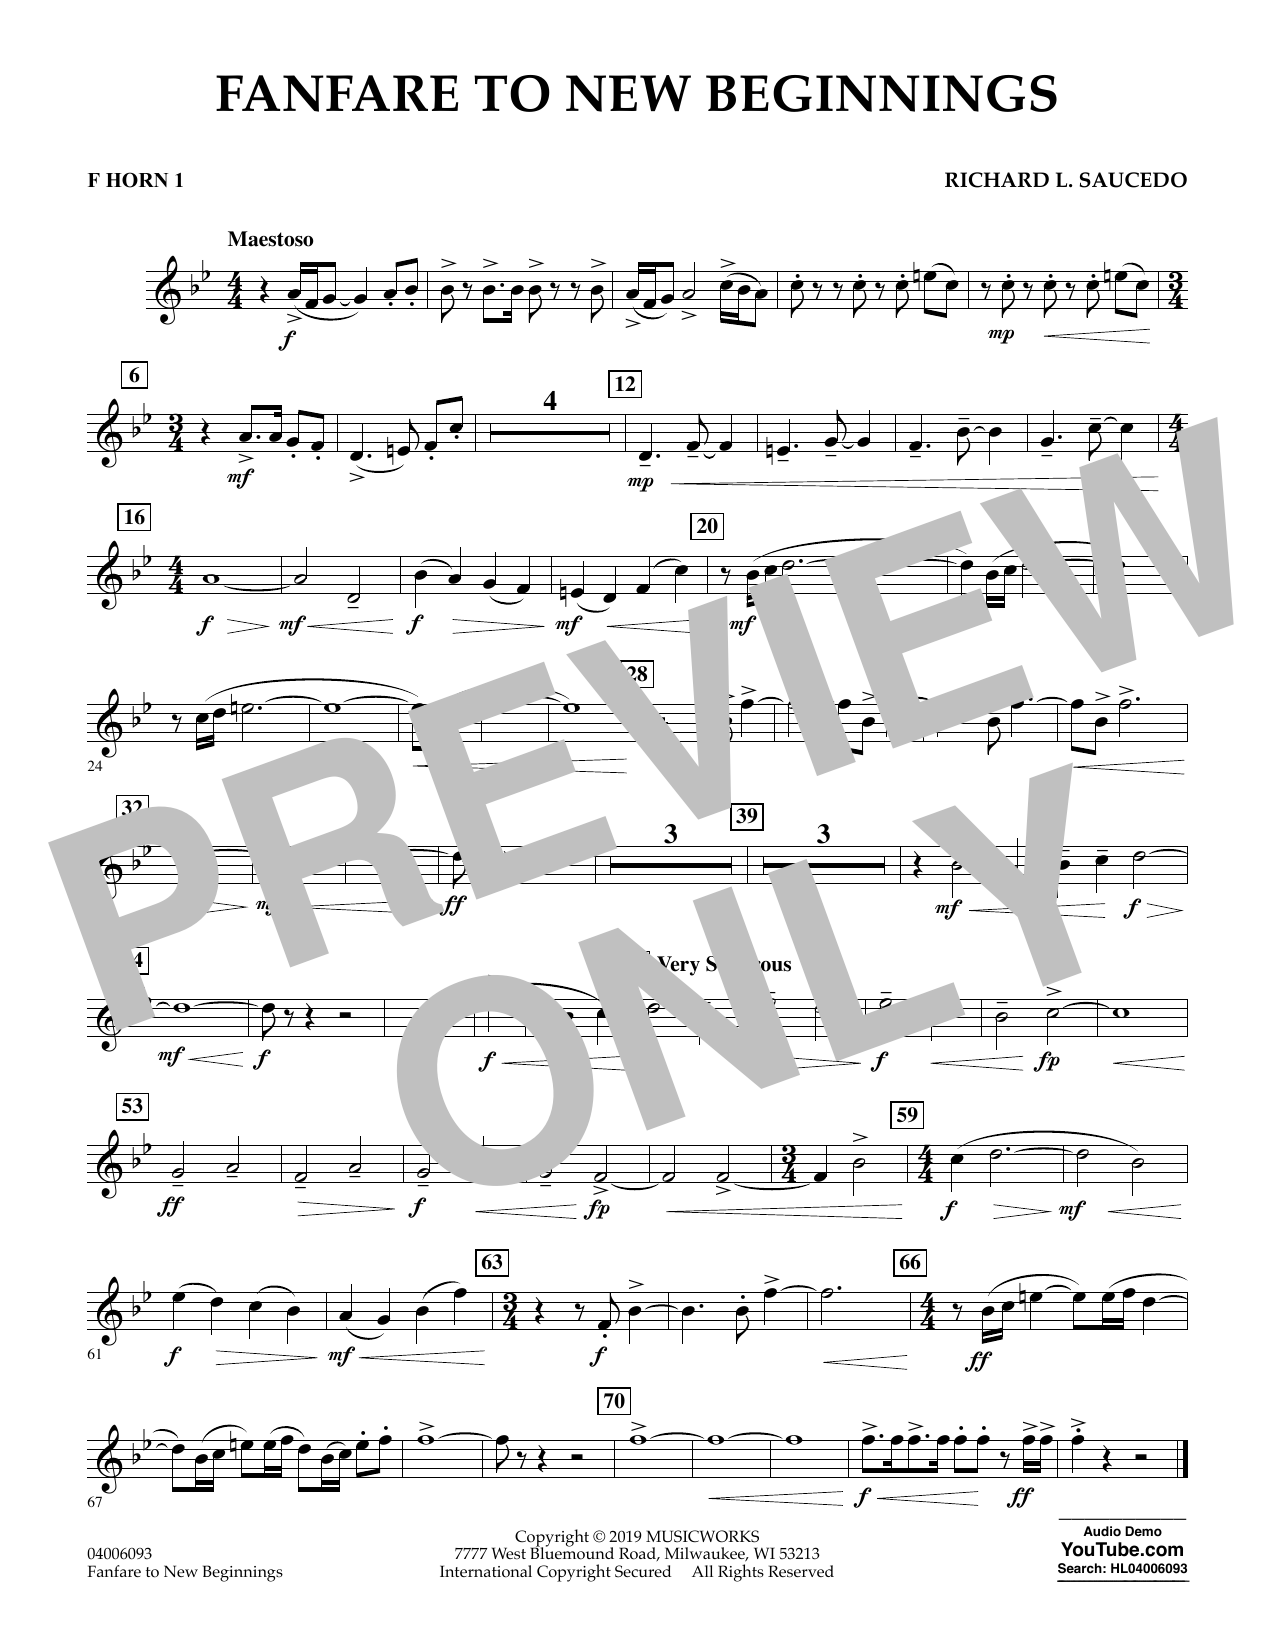 Download Richard L. Saucedo Fanfare for New Beginnings - F Horn 1 Sheet Music